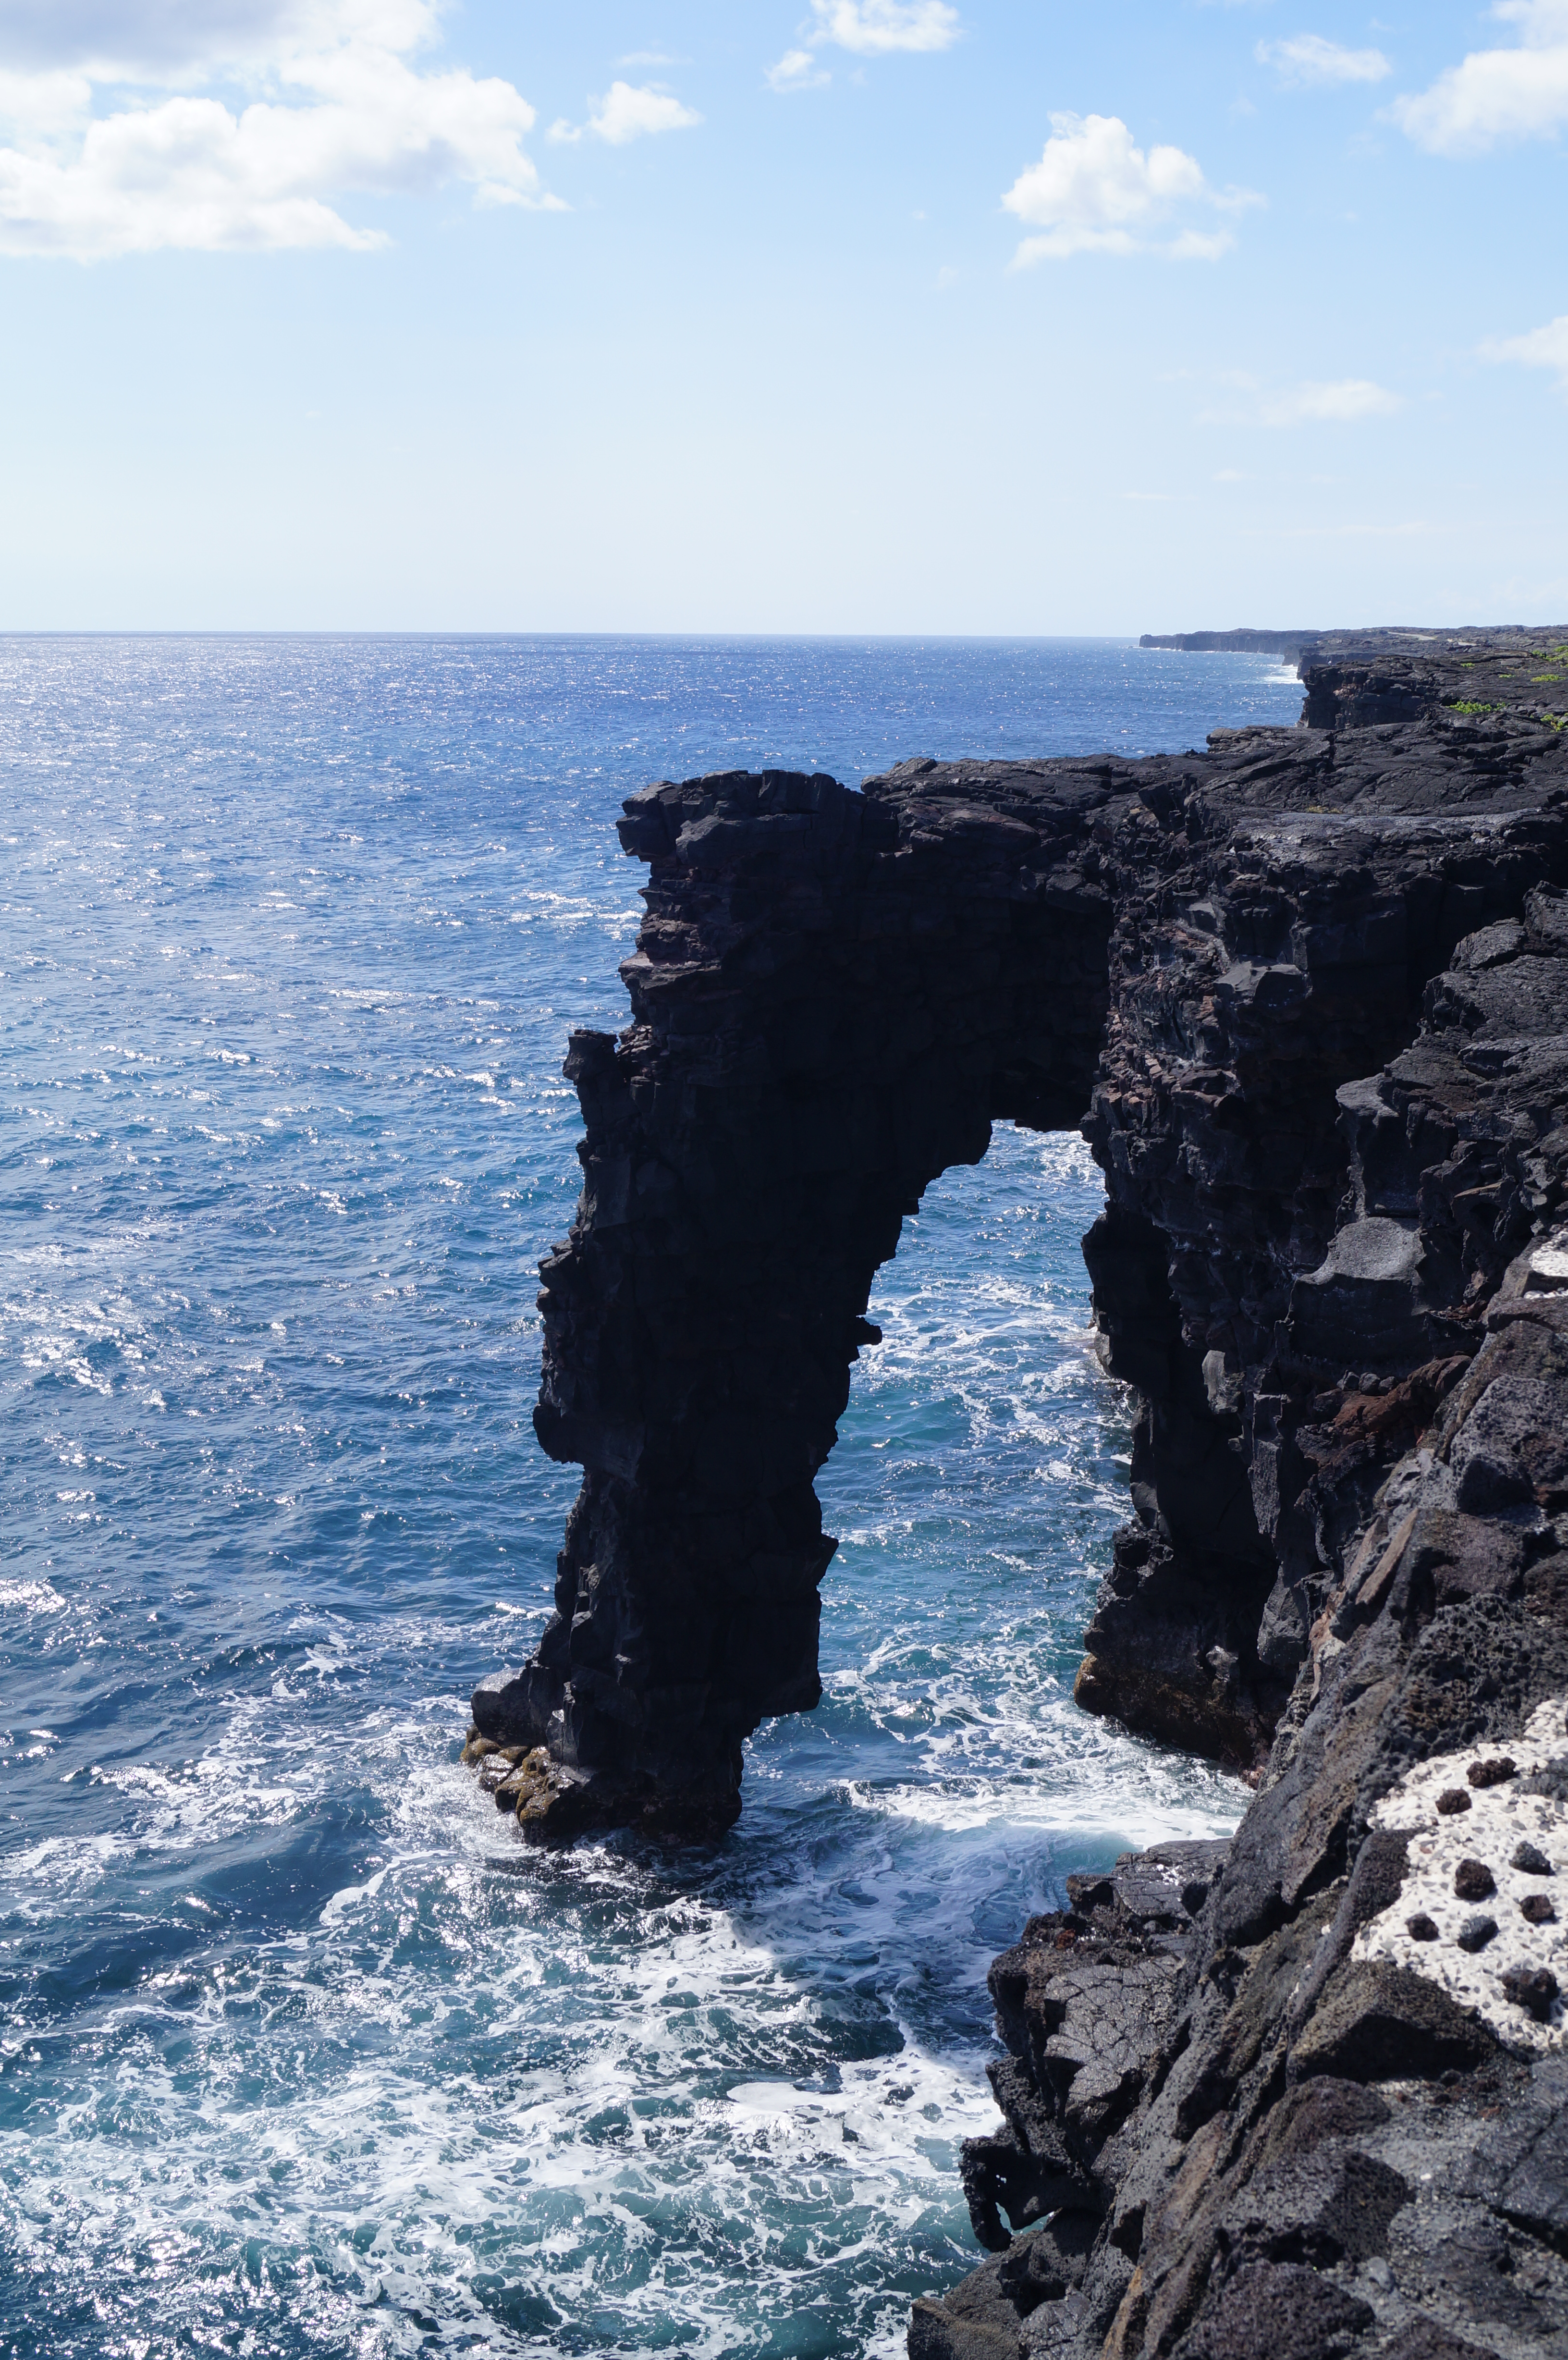 Big Adventures Await on “The Big Island” of Hawaii